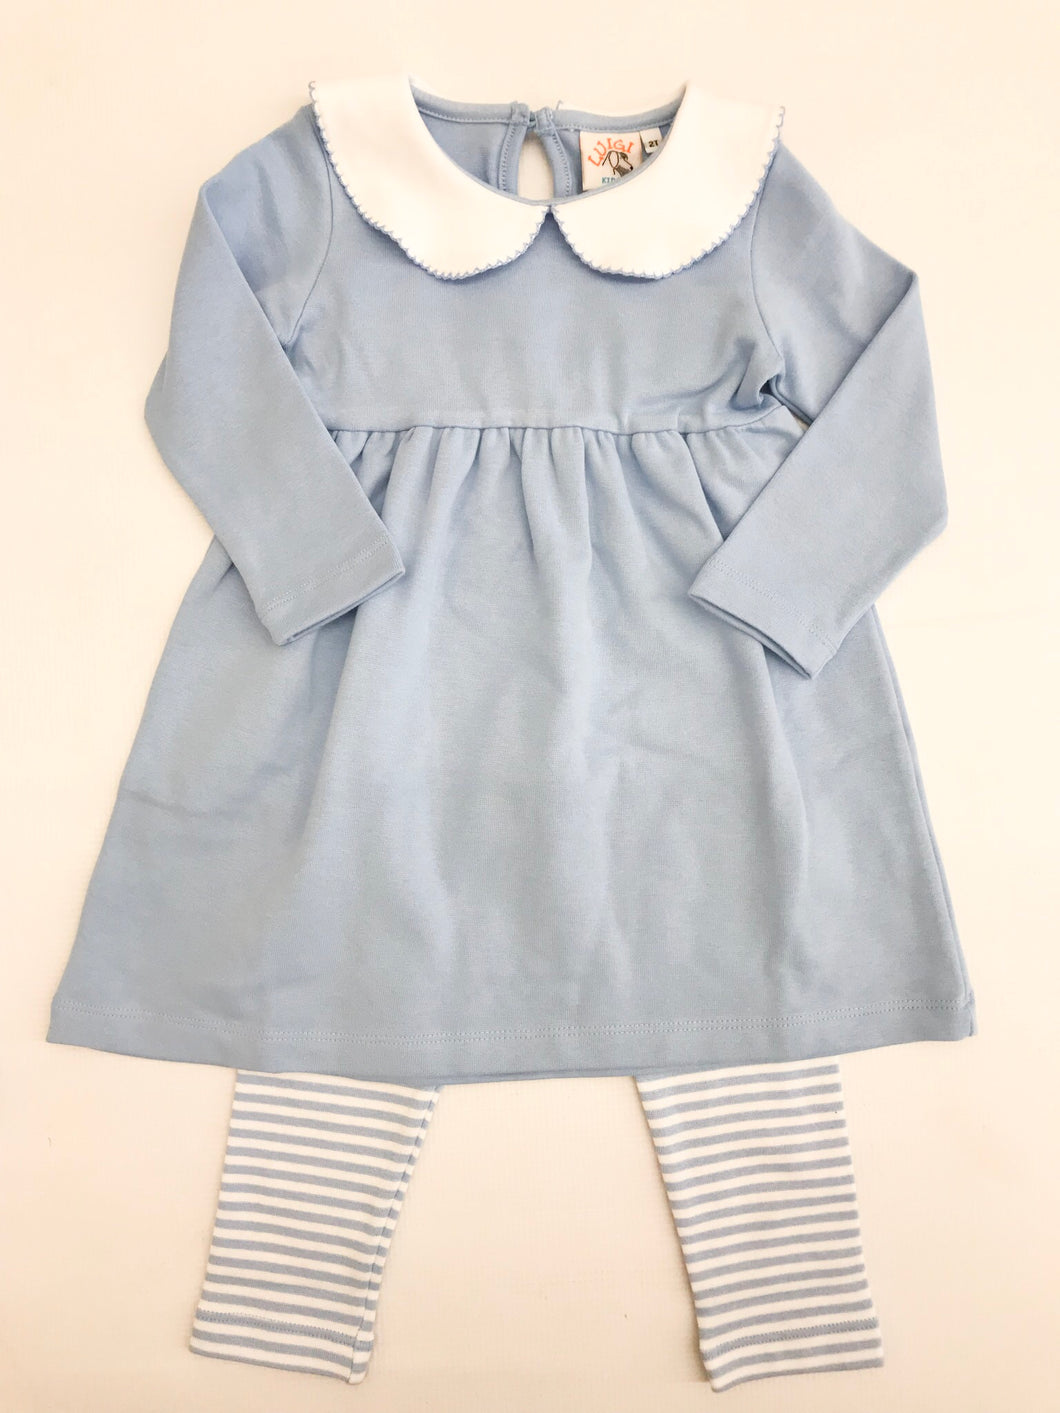 Blue/White Knit Dress w/ Leggings